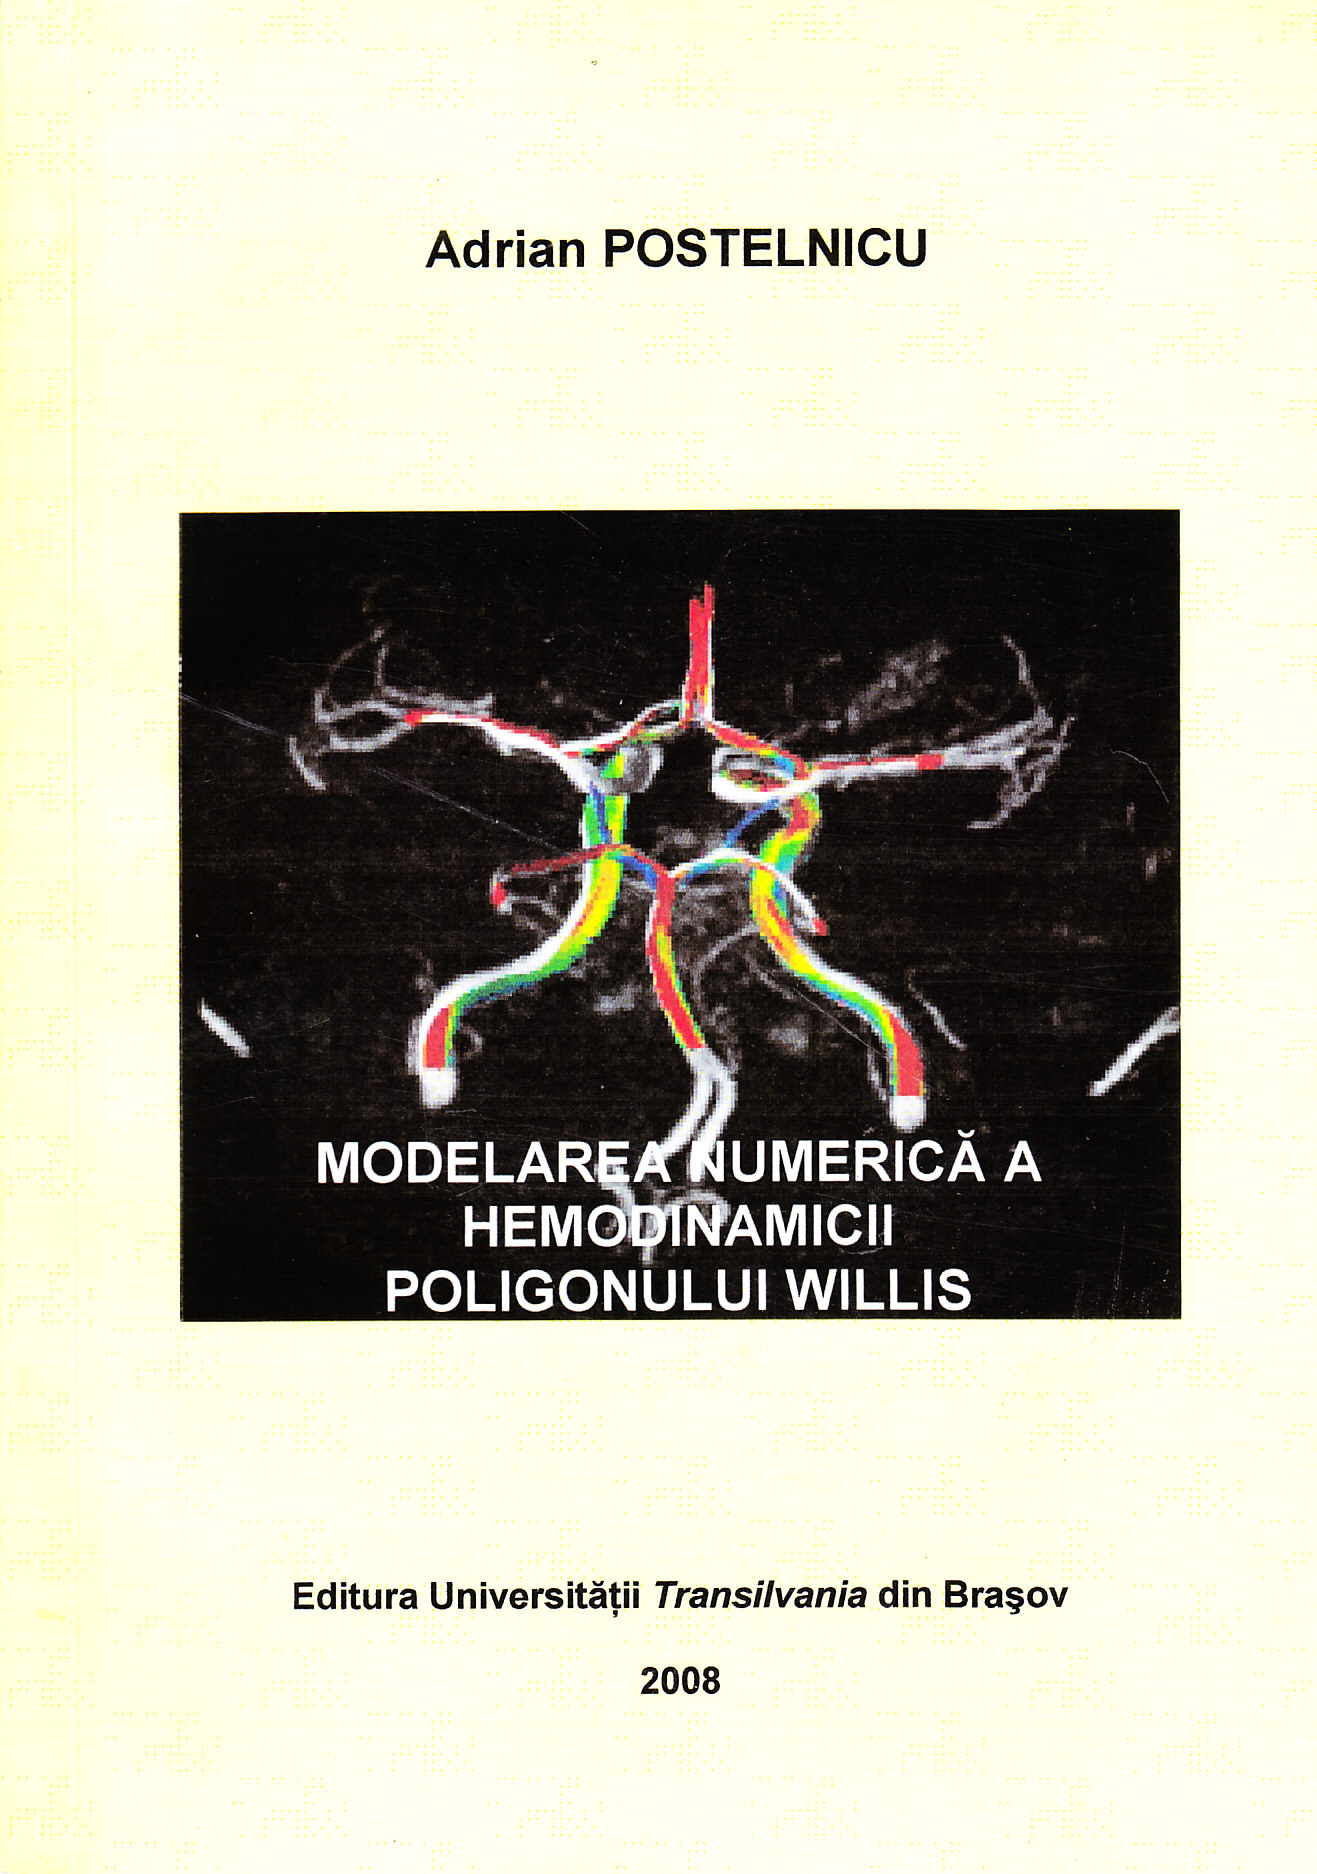 Modelarea numerica a hemodinamicii poligonului Willis - Adrian Postelnicu